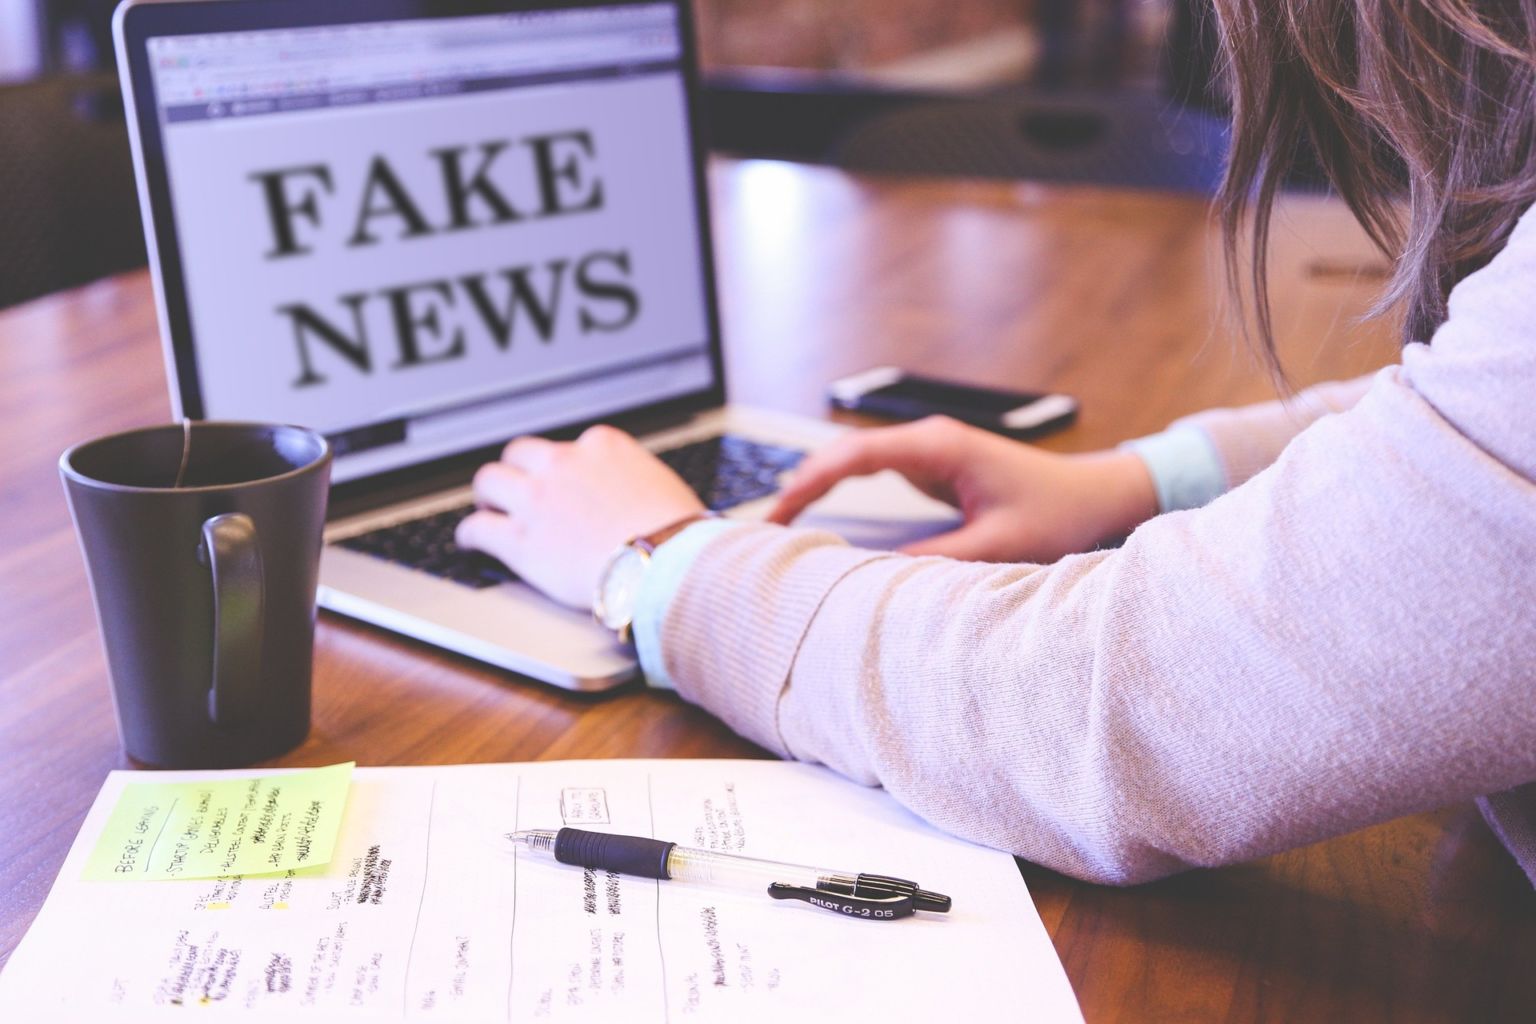 Comissão aprova requerimento para debater inquéritos sobre fake news no STF